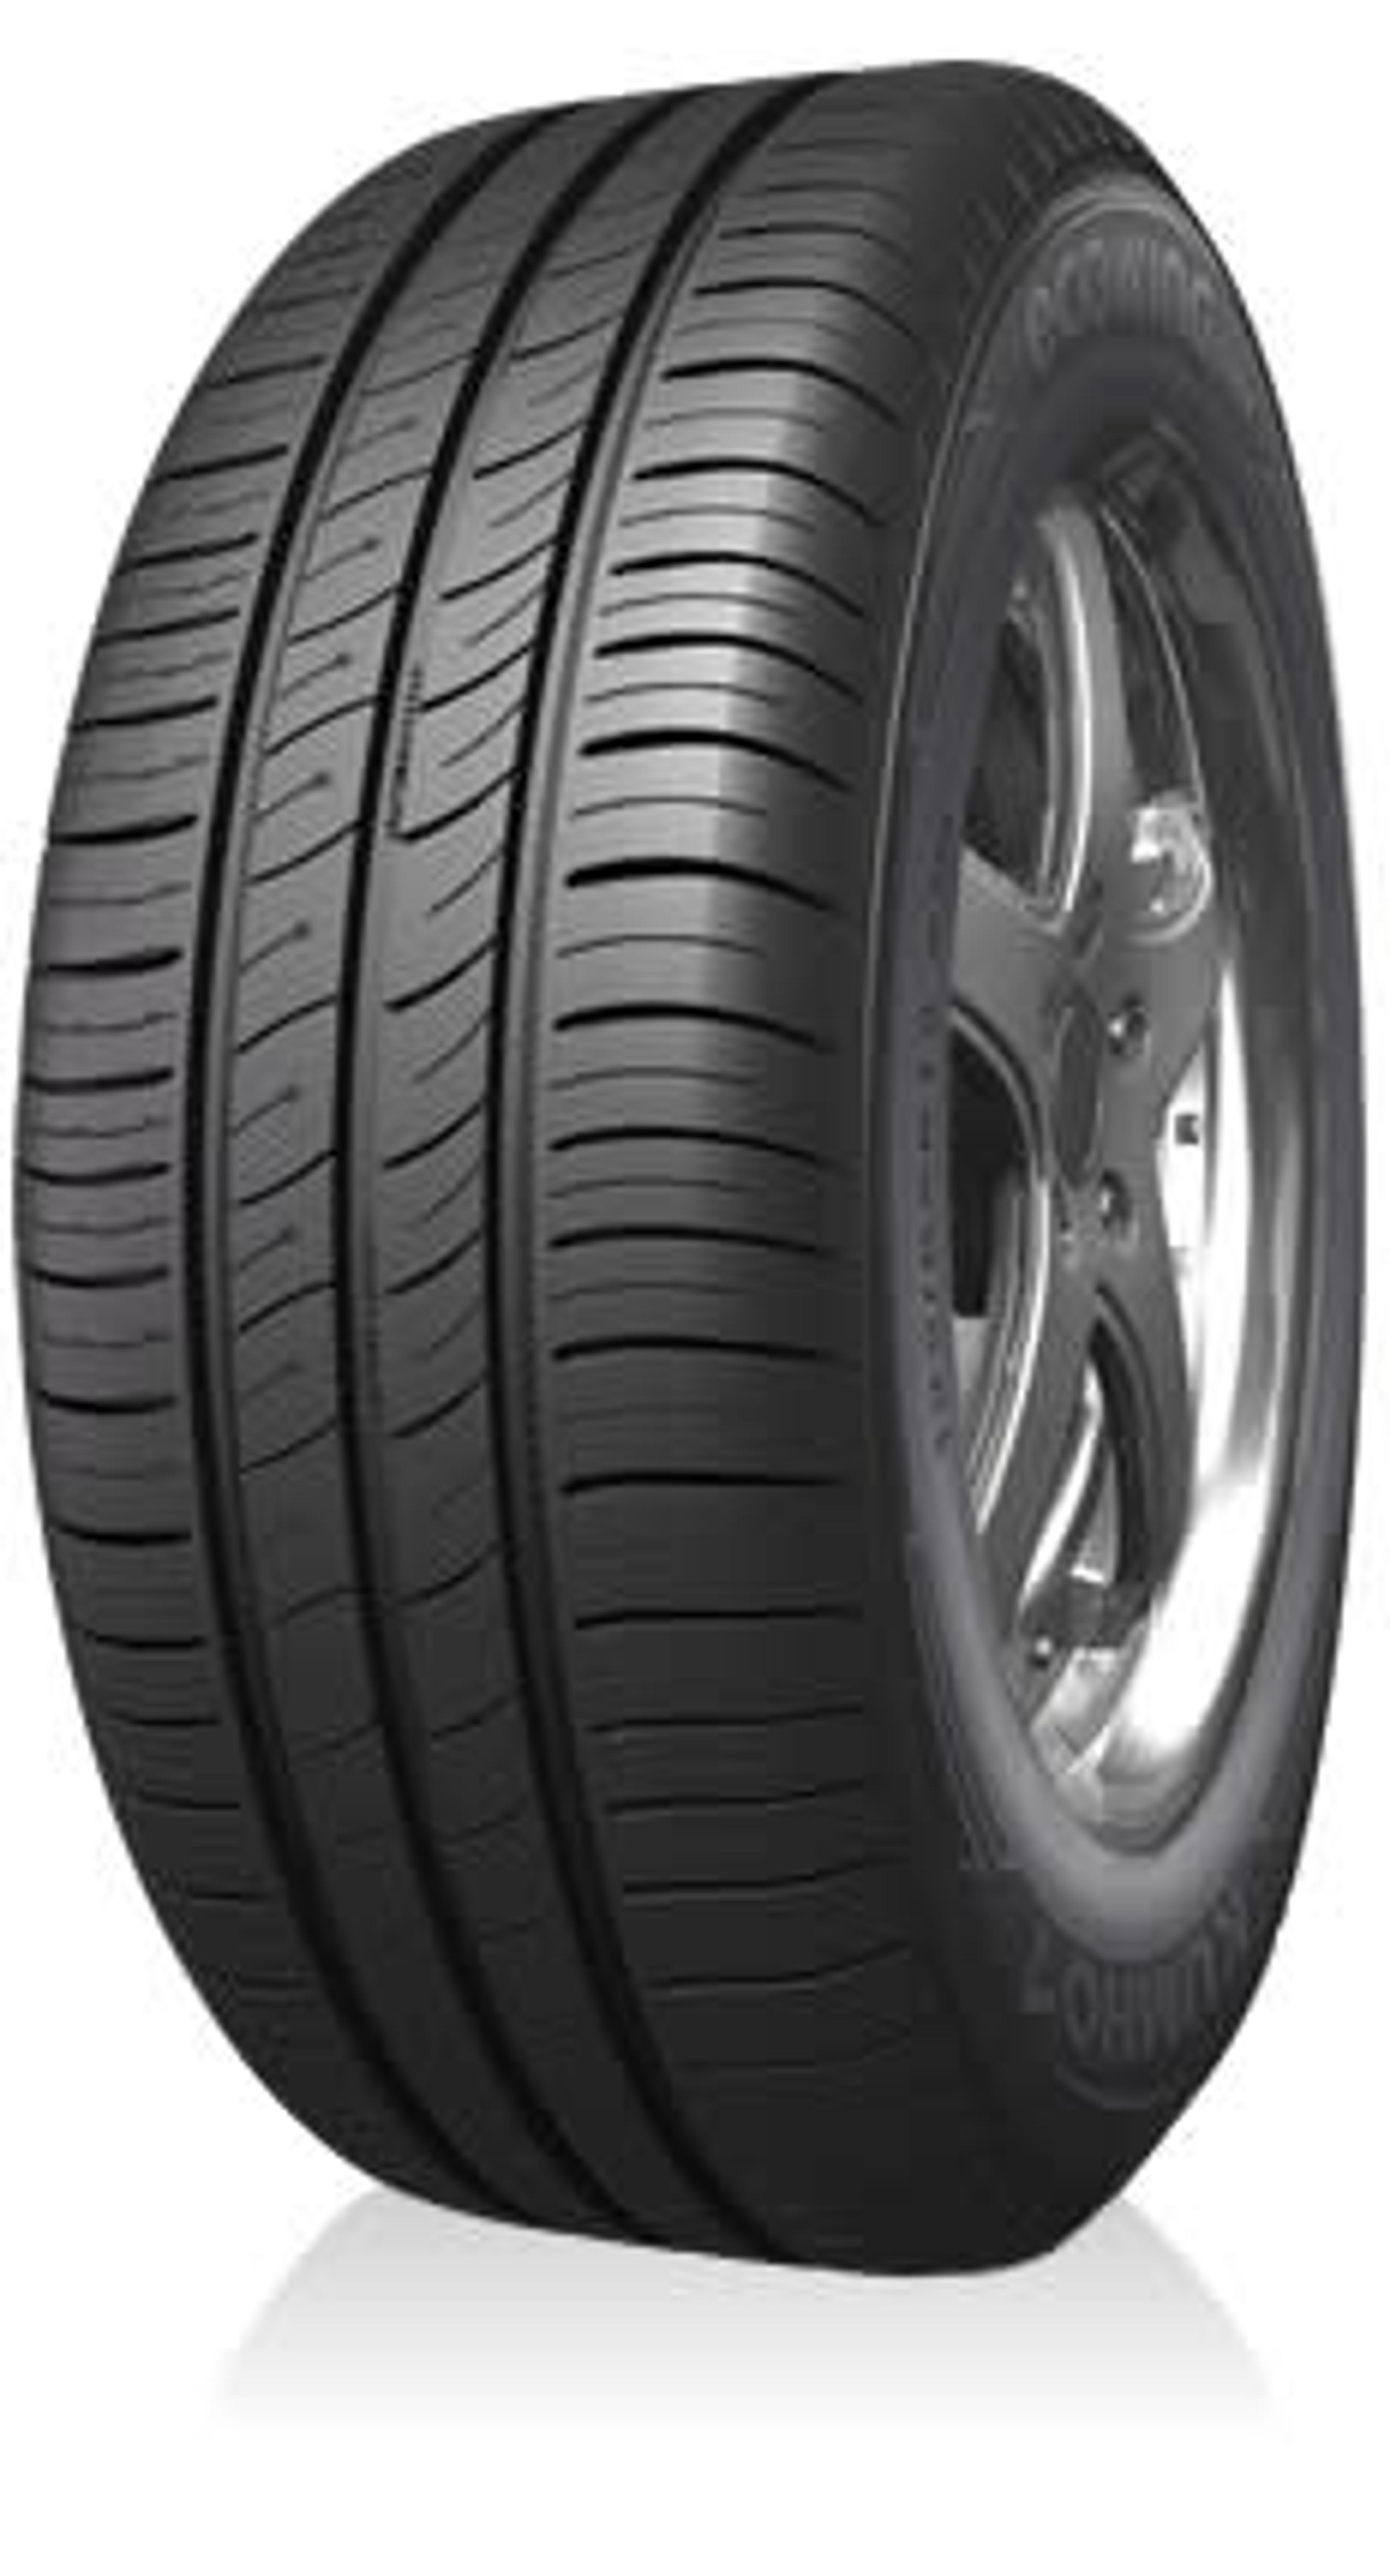 Buy Kumho KH27 | SimpleTire Tires Online